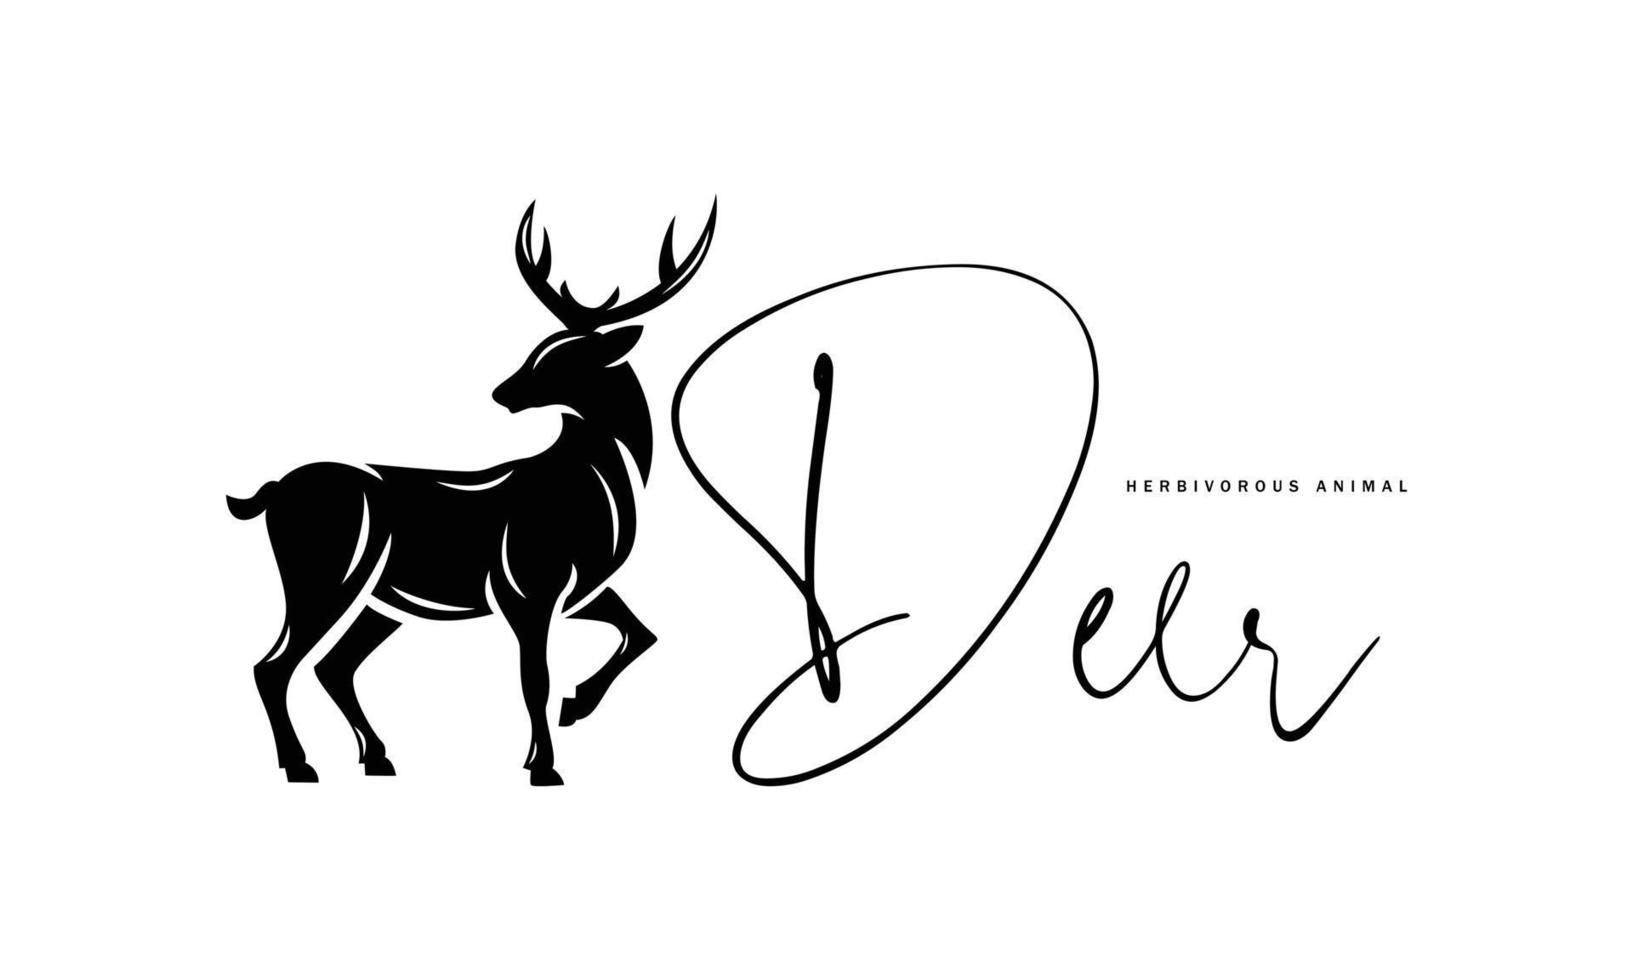 cervo illustrazione vettoriale su sfondo bianco - silhouette bellezza e carattere forte, icona, simbolo, distintivo, emblema della foresta capreolus, cervidae